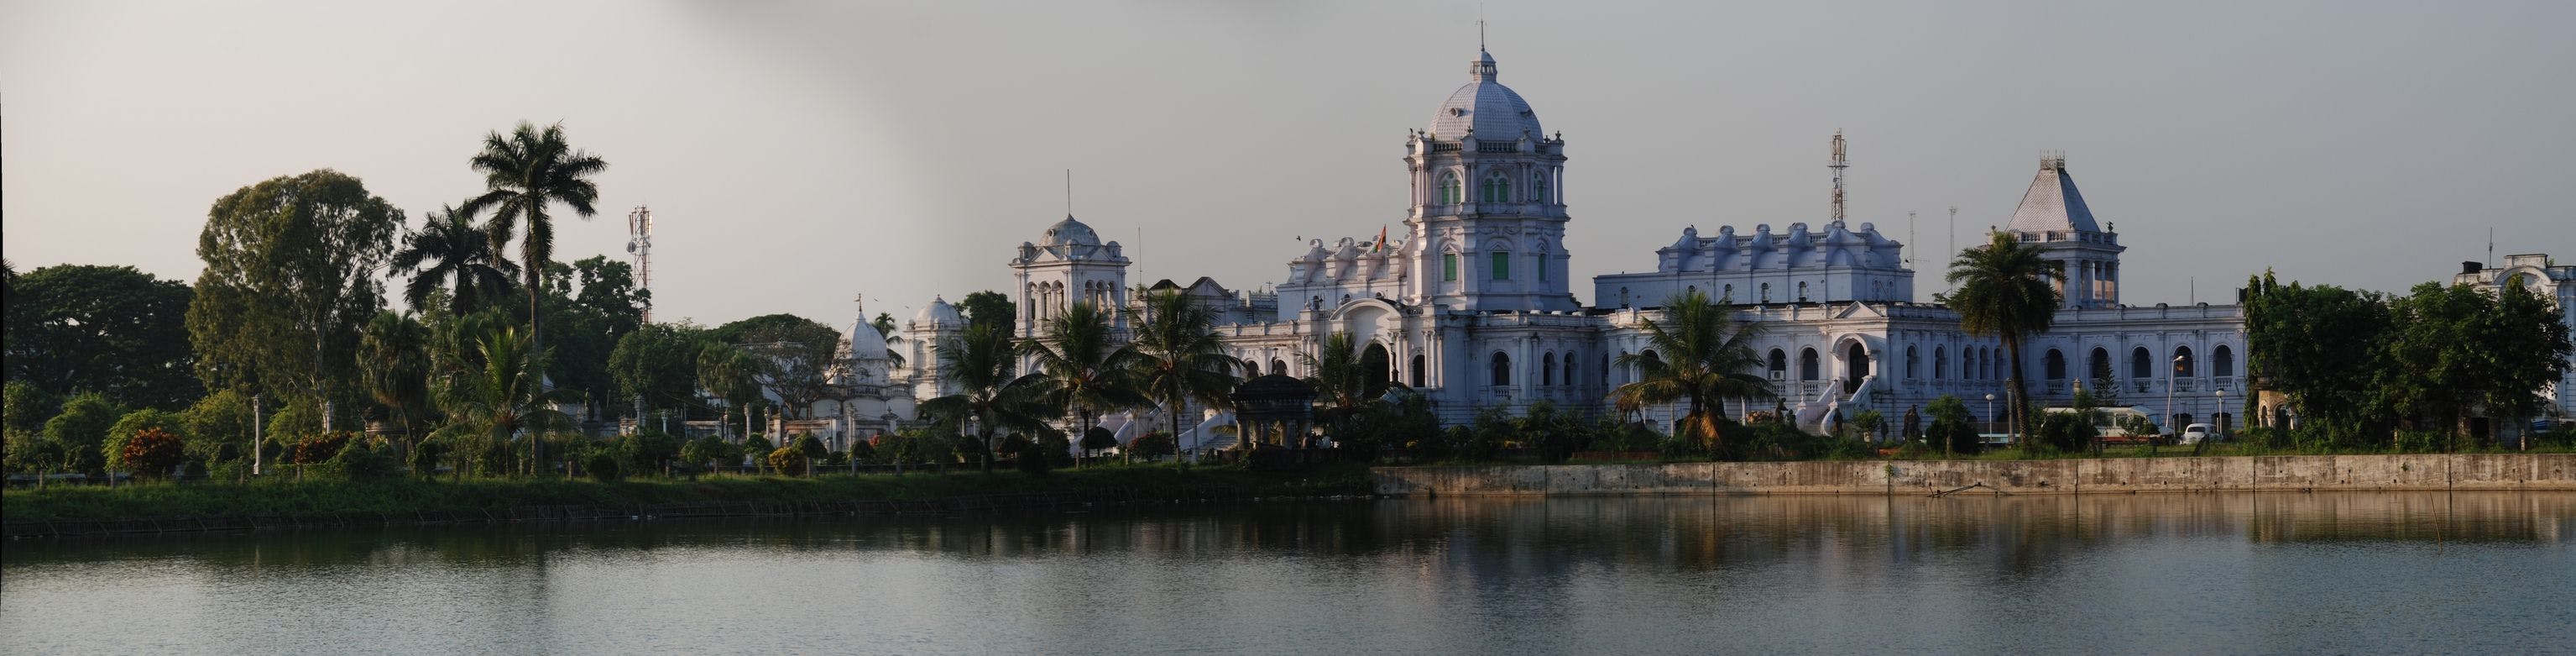 A view of Ujjayanta Palace